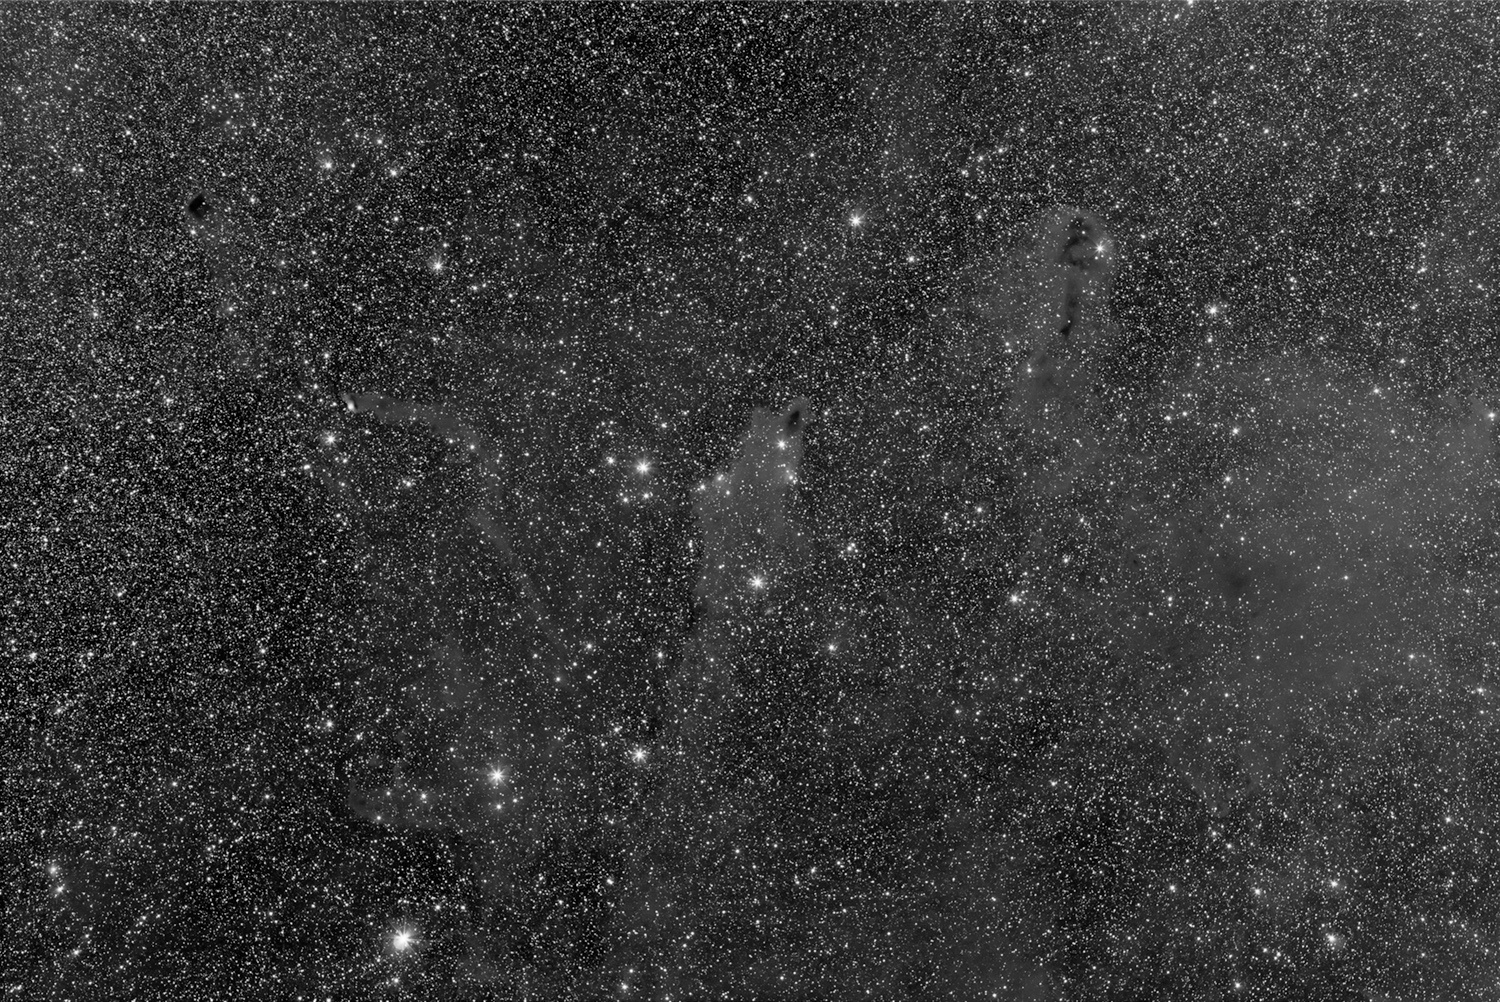 Cefeusz_Darks_2018_mono.jpg.14cb099d4a47117bd1d3f161b6a6ebb0.jpg